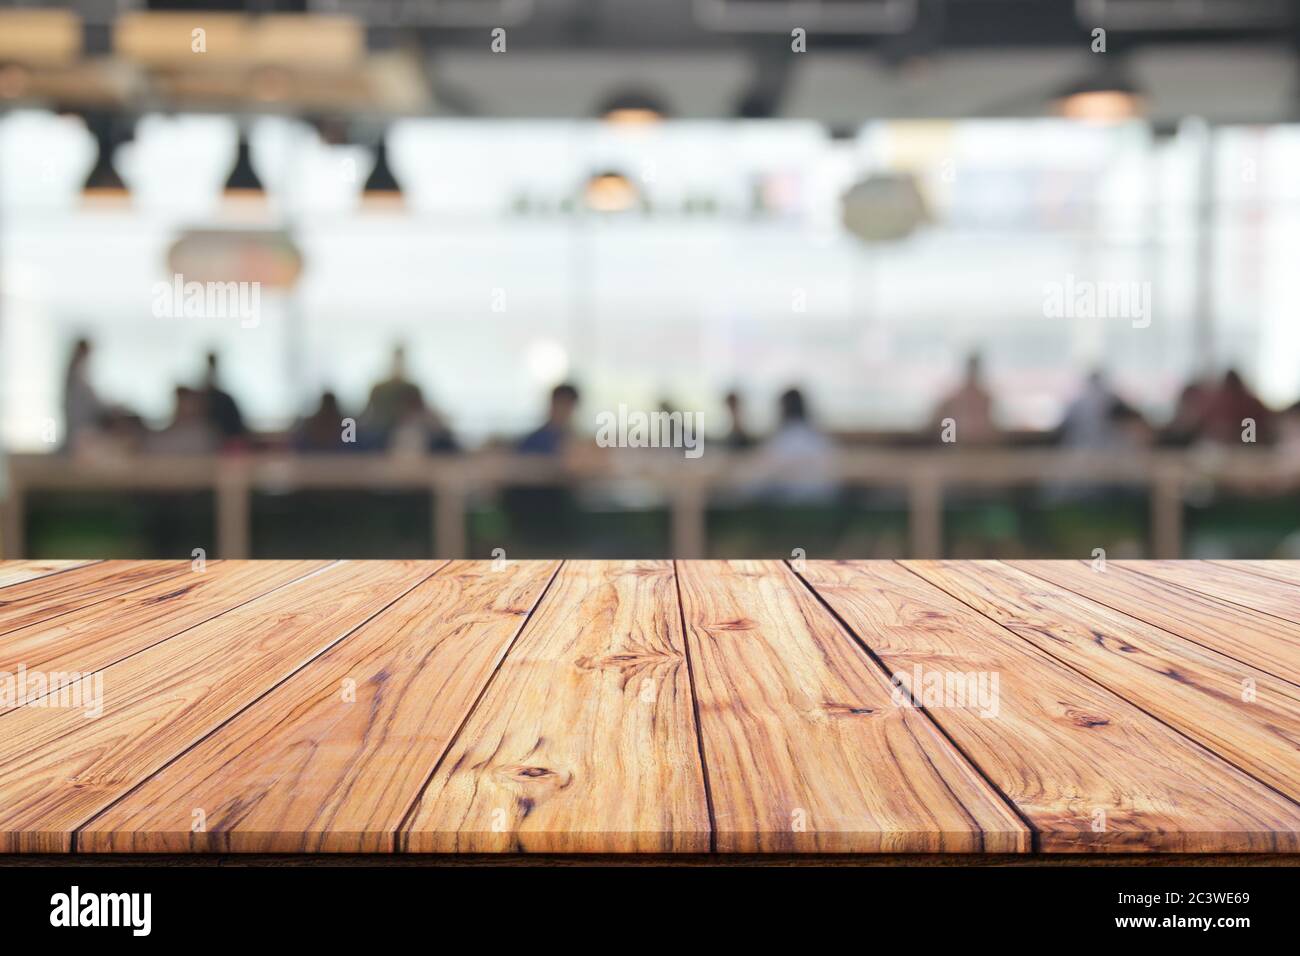 Mặt bàn gỗ trên nền phông nền mờ của quán cà phê thật tuyệt vời để tạo nên không gian sạch sẽ và tinh tế. Khám phá hình ảnh và tận hưởng vẻ đẹp của mặt bàn gỗ trông thật ấn tượng và sang trọng trên nền phông nền mờ của quán cà phê.